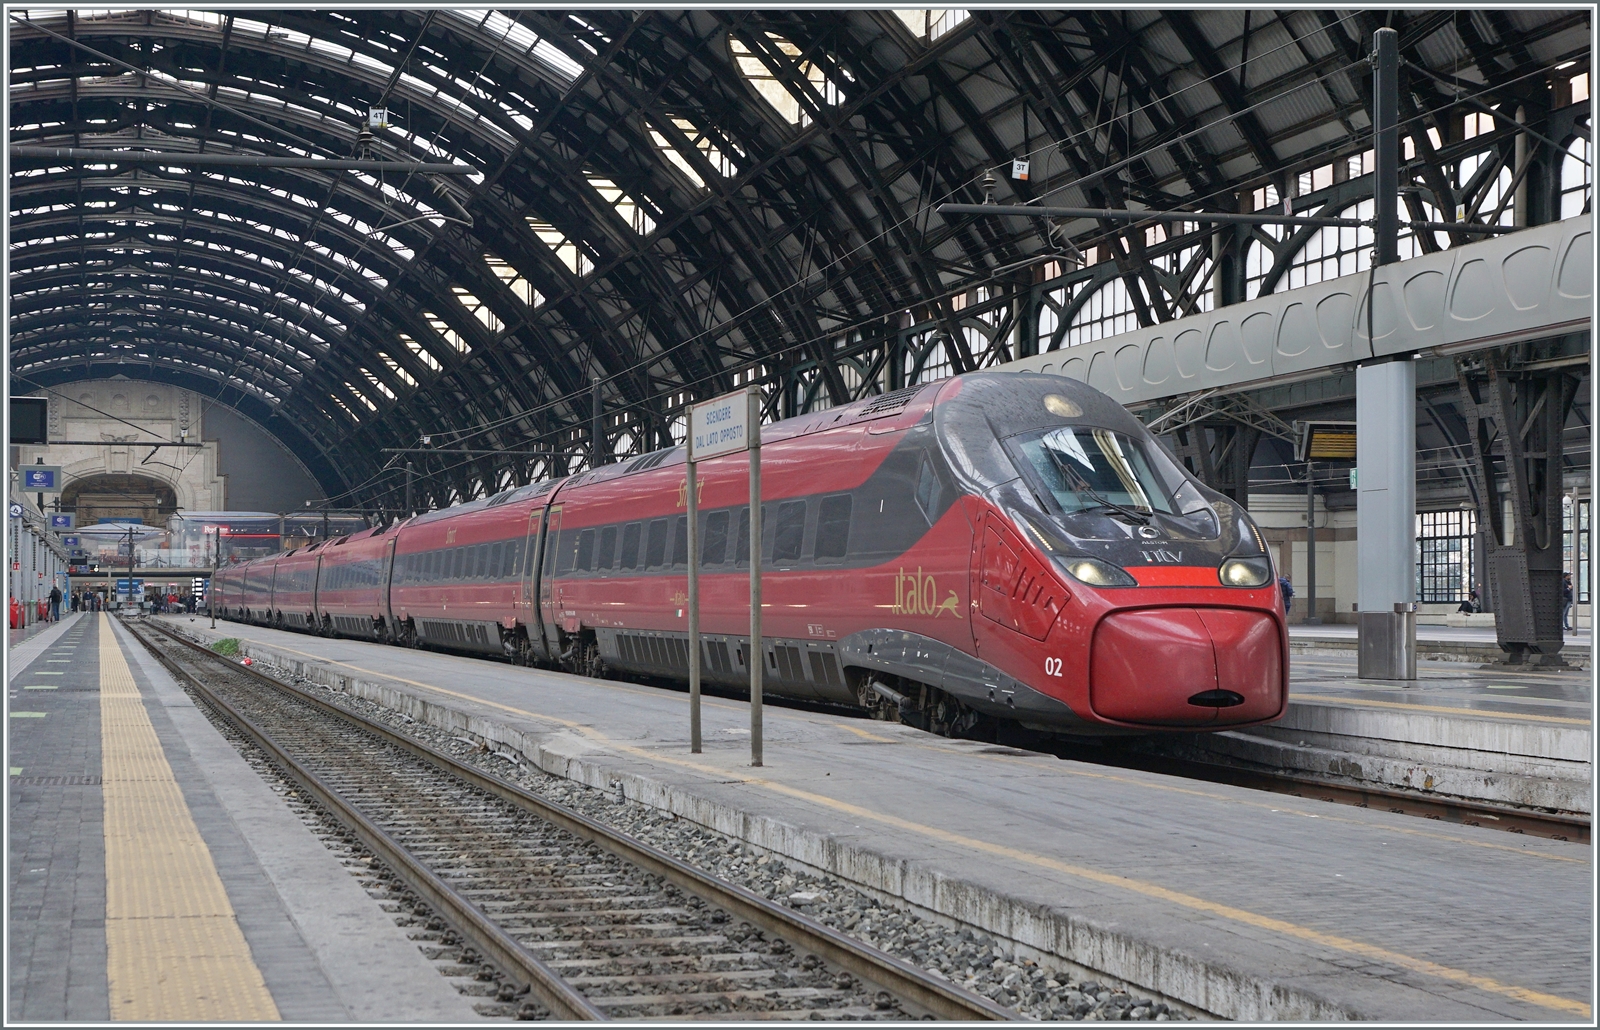 Zur Erweiterung ihrer Flotte bestellte NTV weitere 26 Züge. Die Pendolino-Züge der fünften Generation haben eine Spitzengeschwindigkeit von 250 km/h, sind jedoch nicht mit  Neigetechnik ausgestattet. Der .italo NTV EVO ETR 675 002 steht in Milano zur Abfahrt bereit. 

8. November 2022